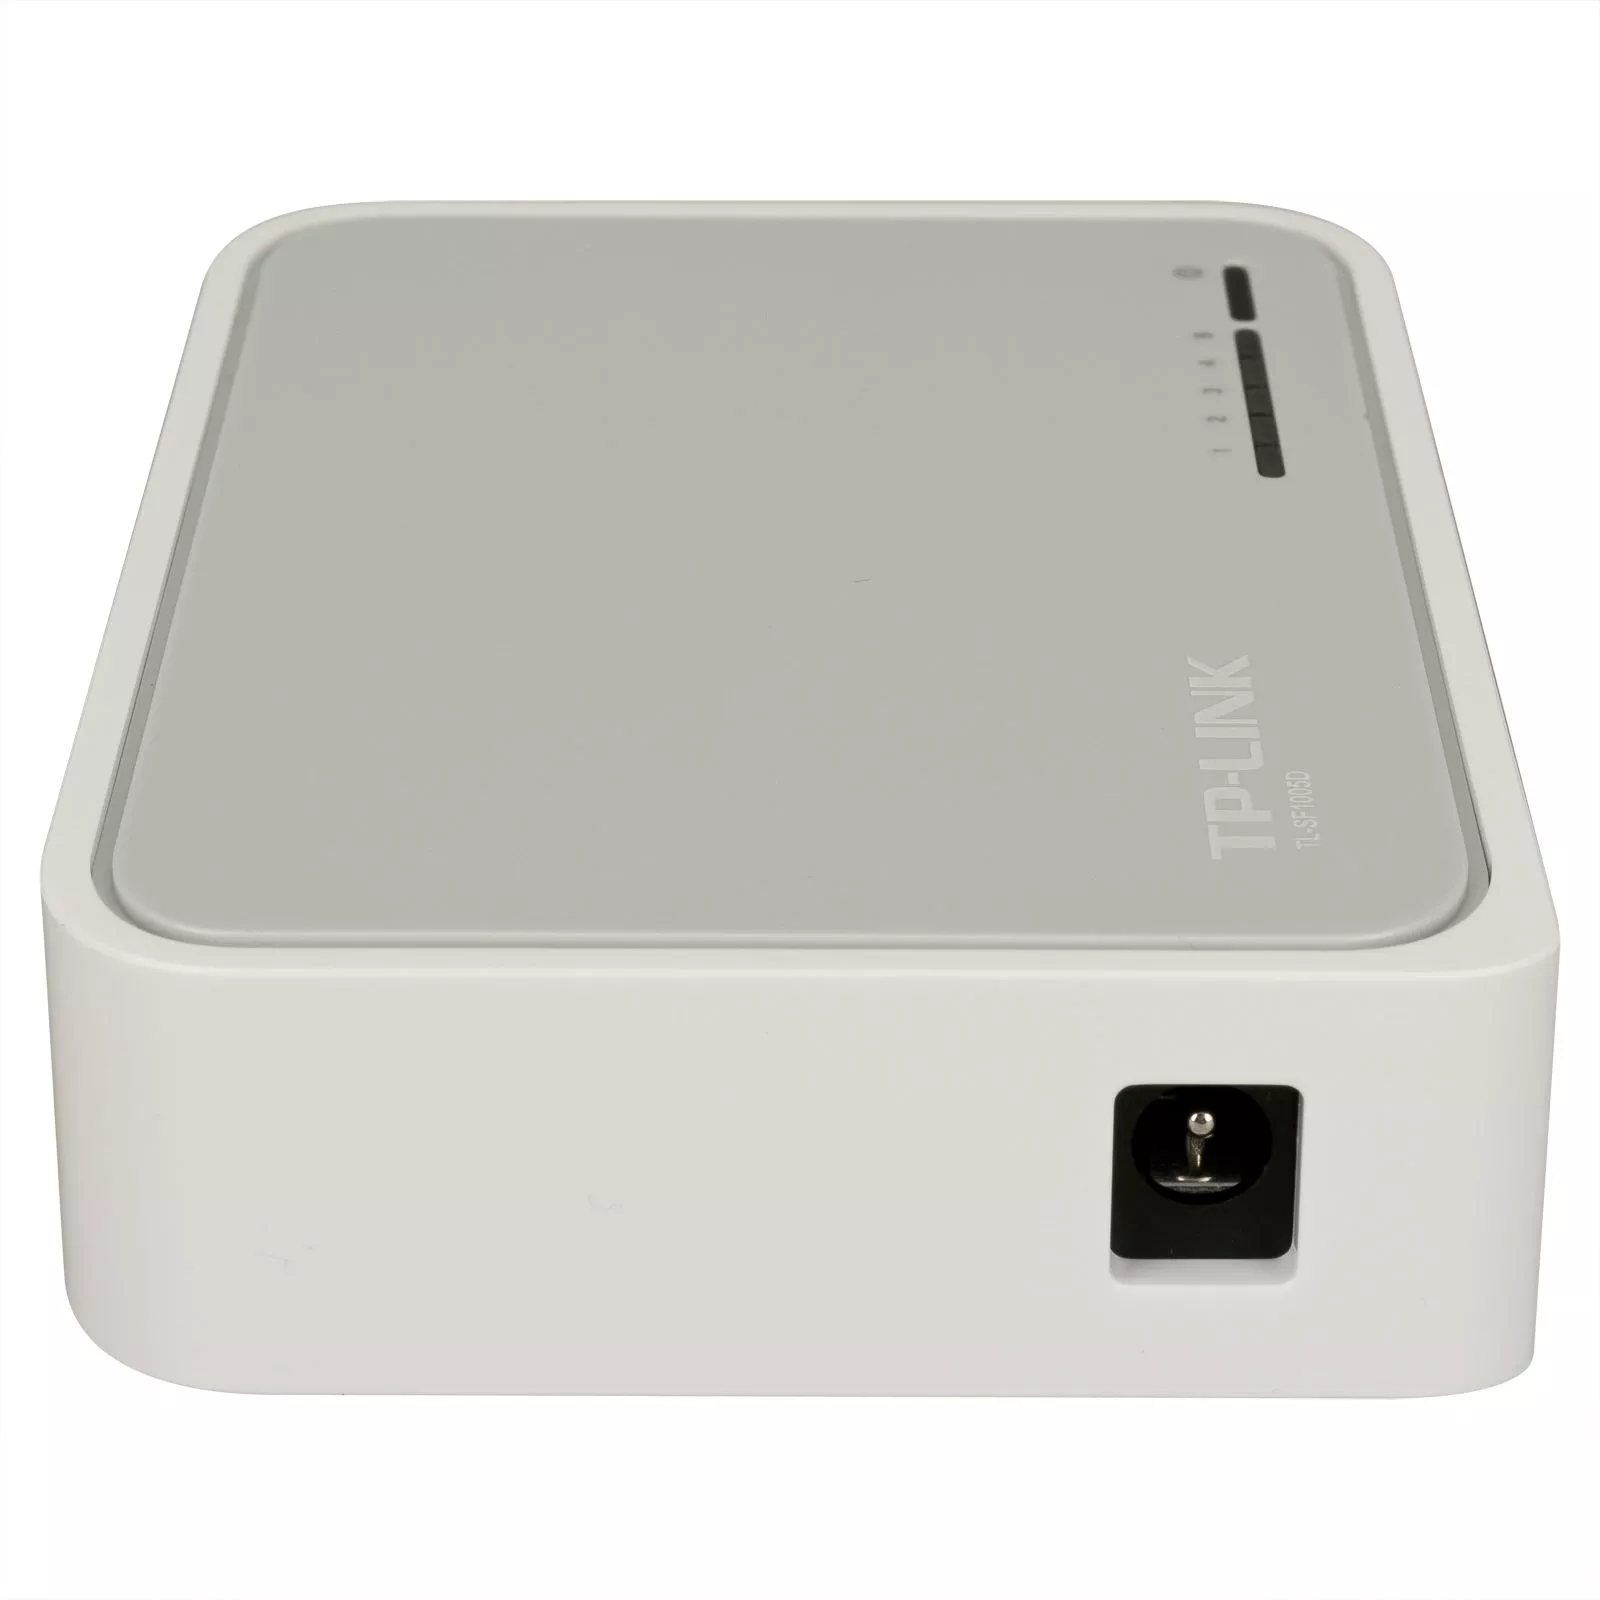 TP-LINK 5-Port 10/100Mbps Desktop Switch (TL-SF1005D) - The source